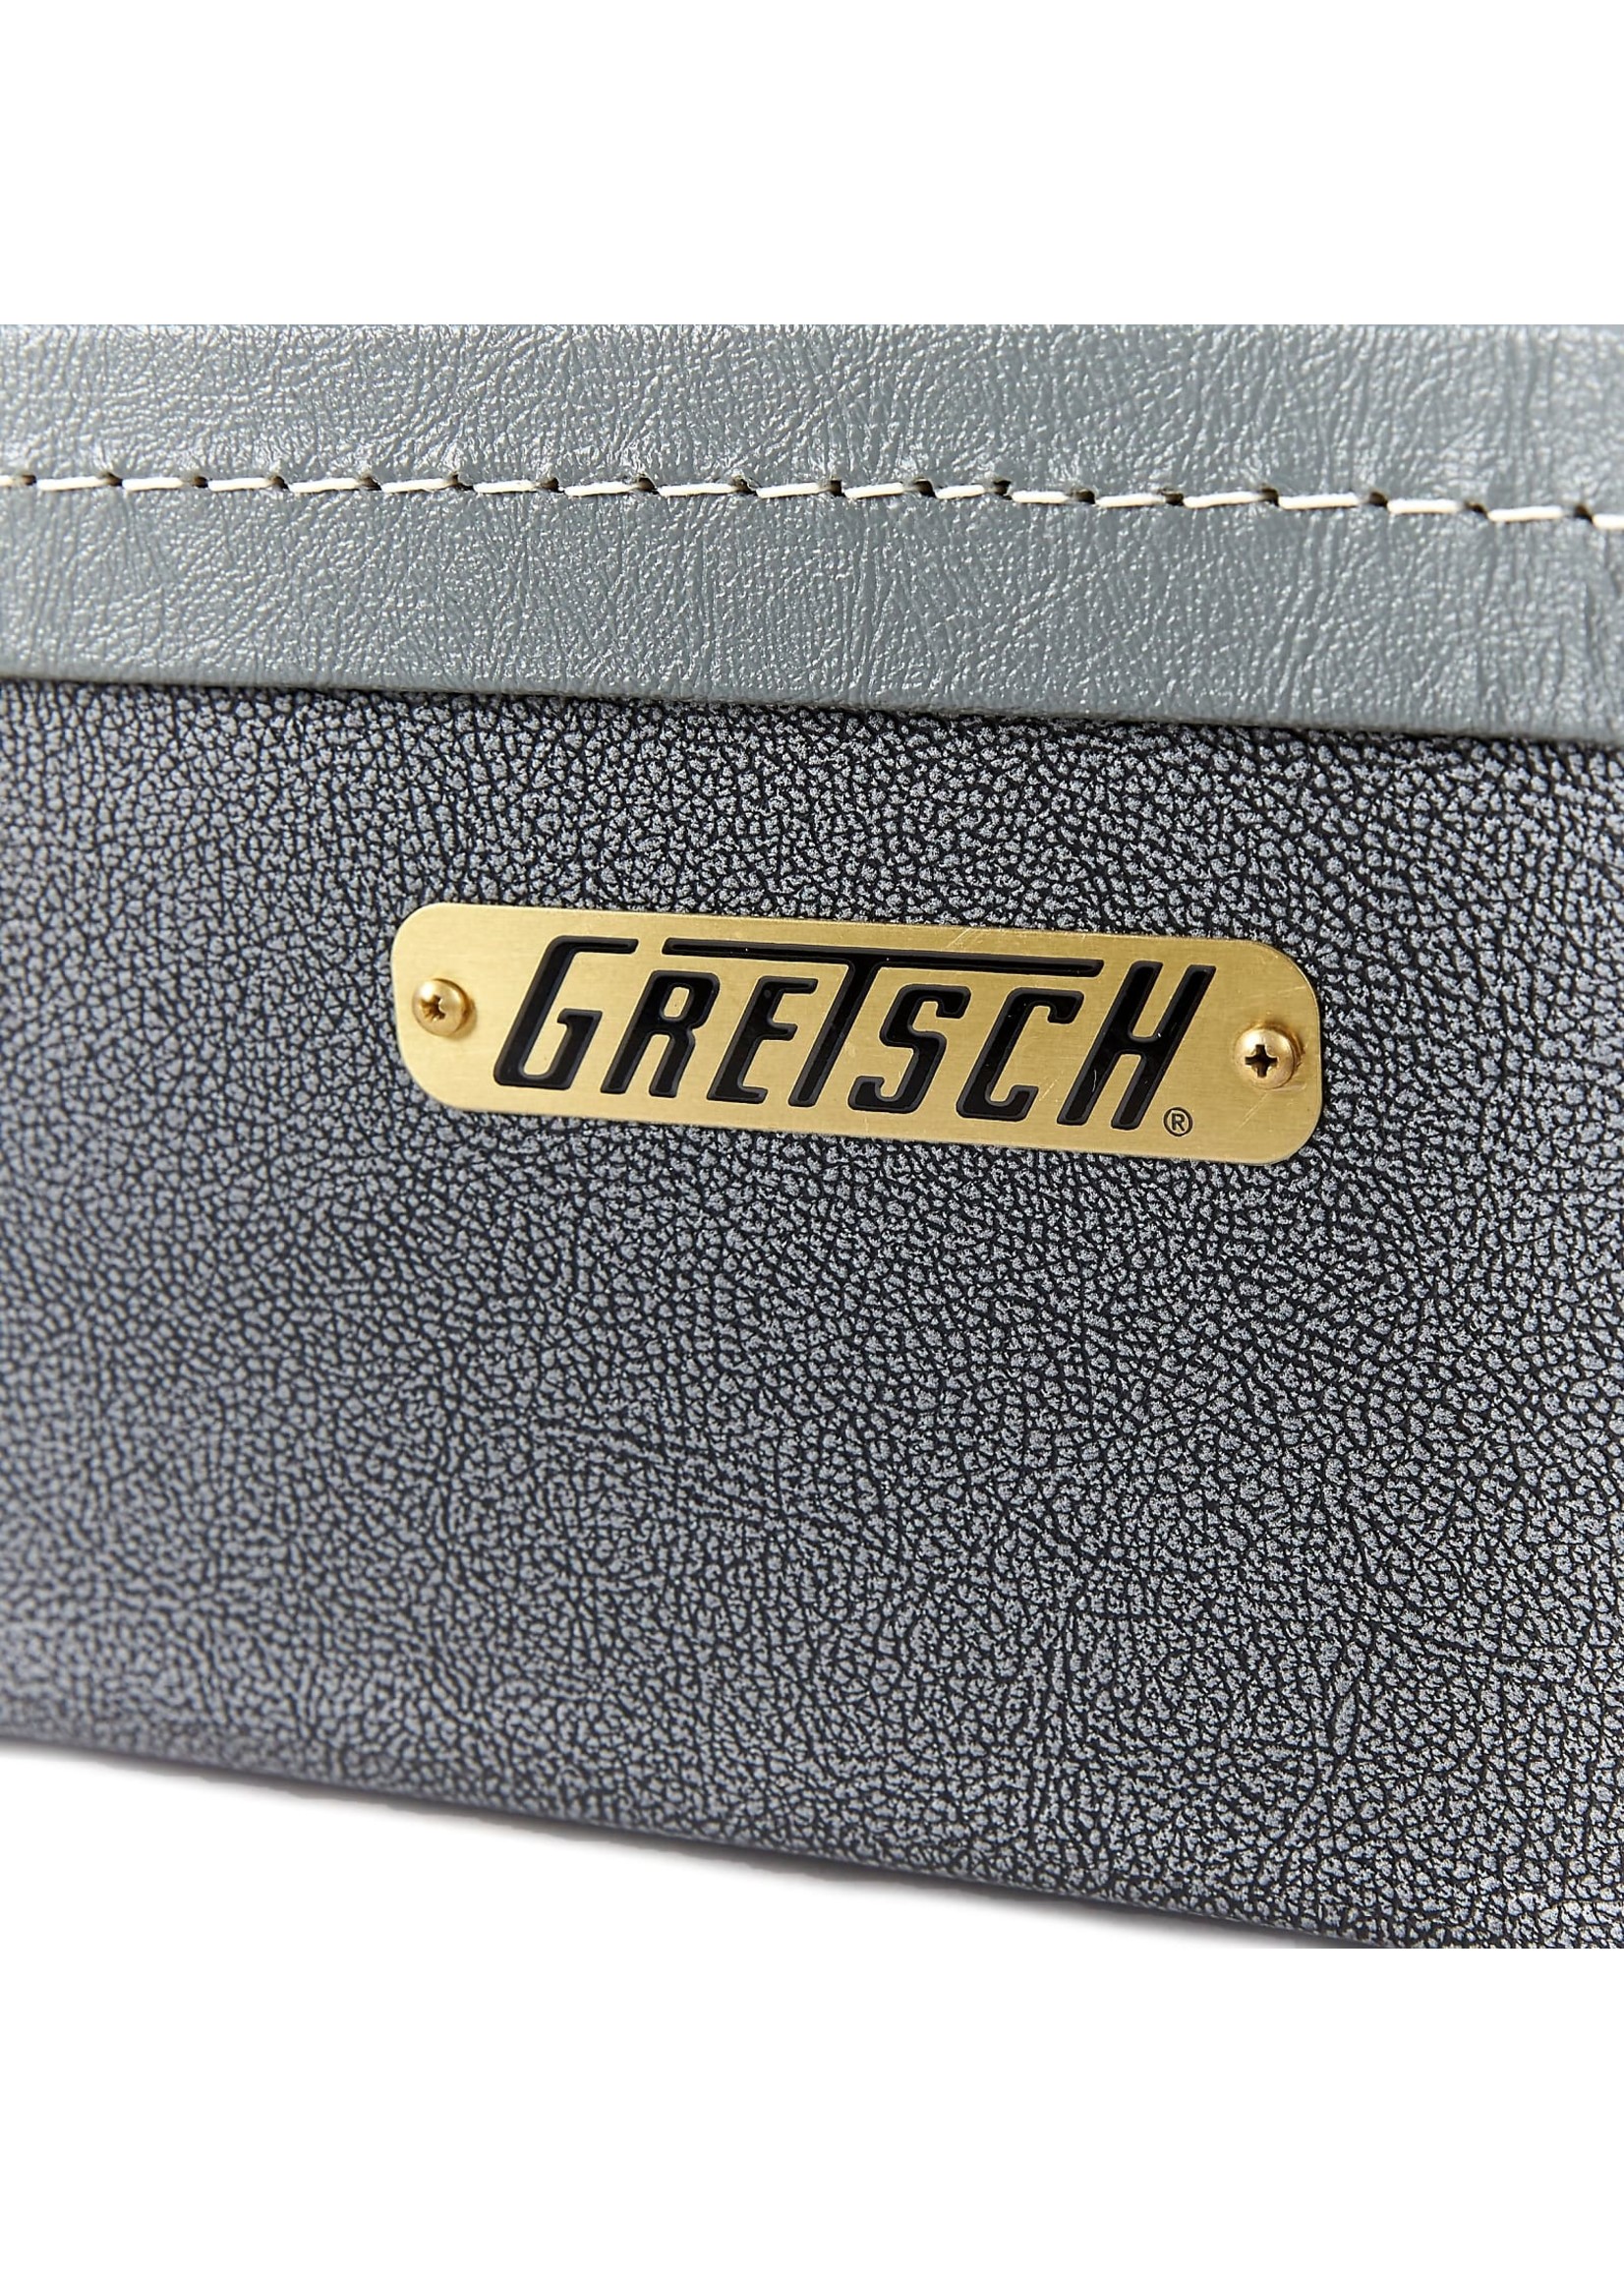 Gretsch Gretsch G6275 17" Premium Gray Speckle Hollow Body Hardshell Case